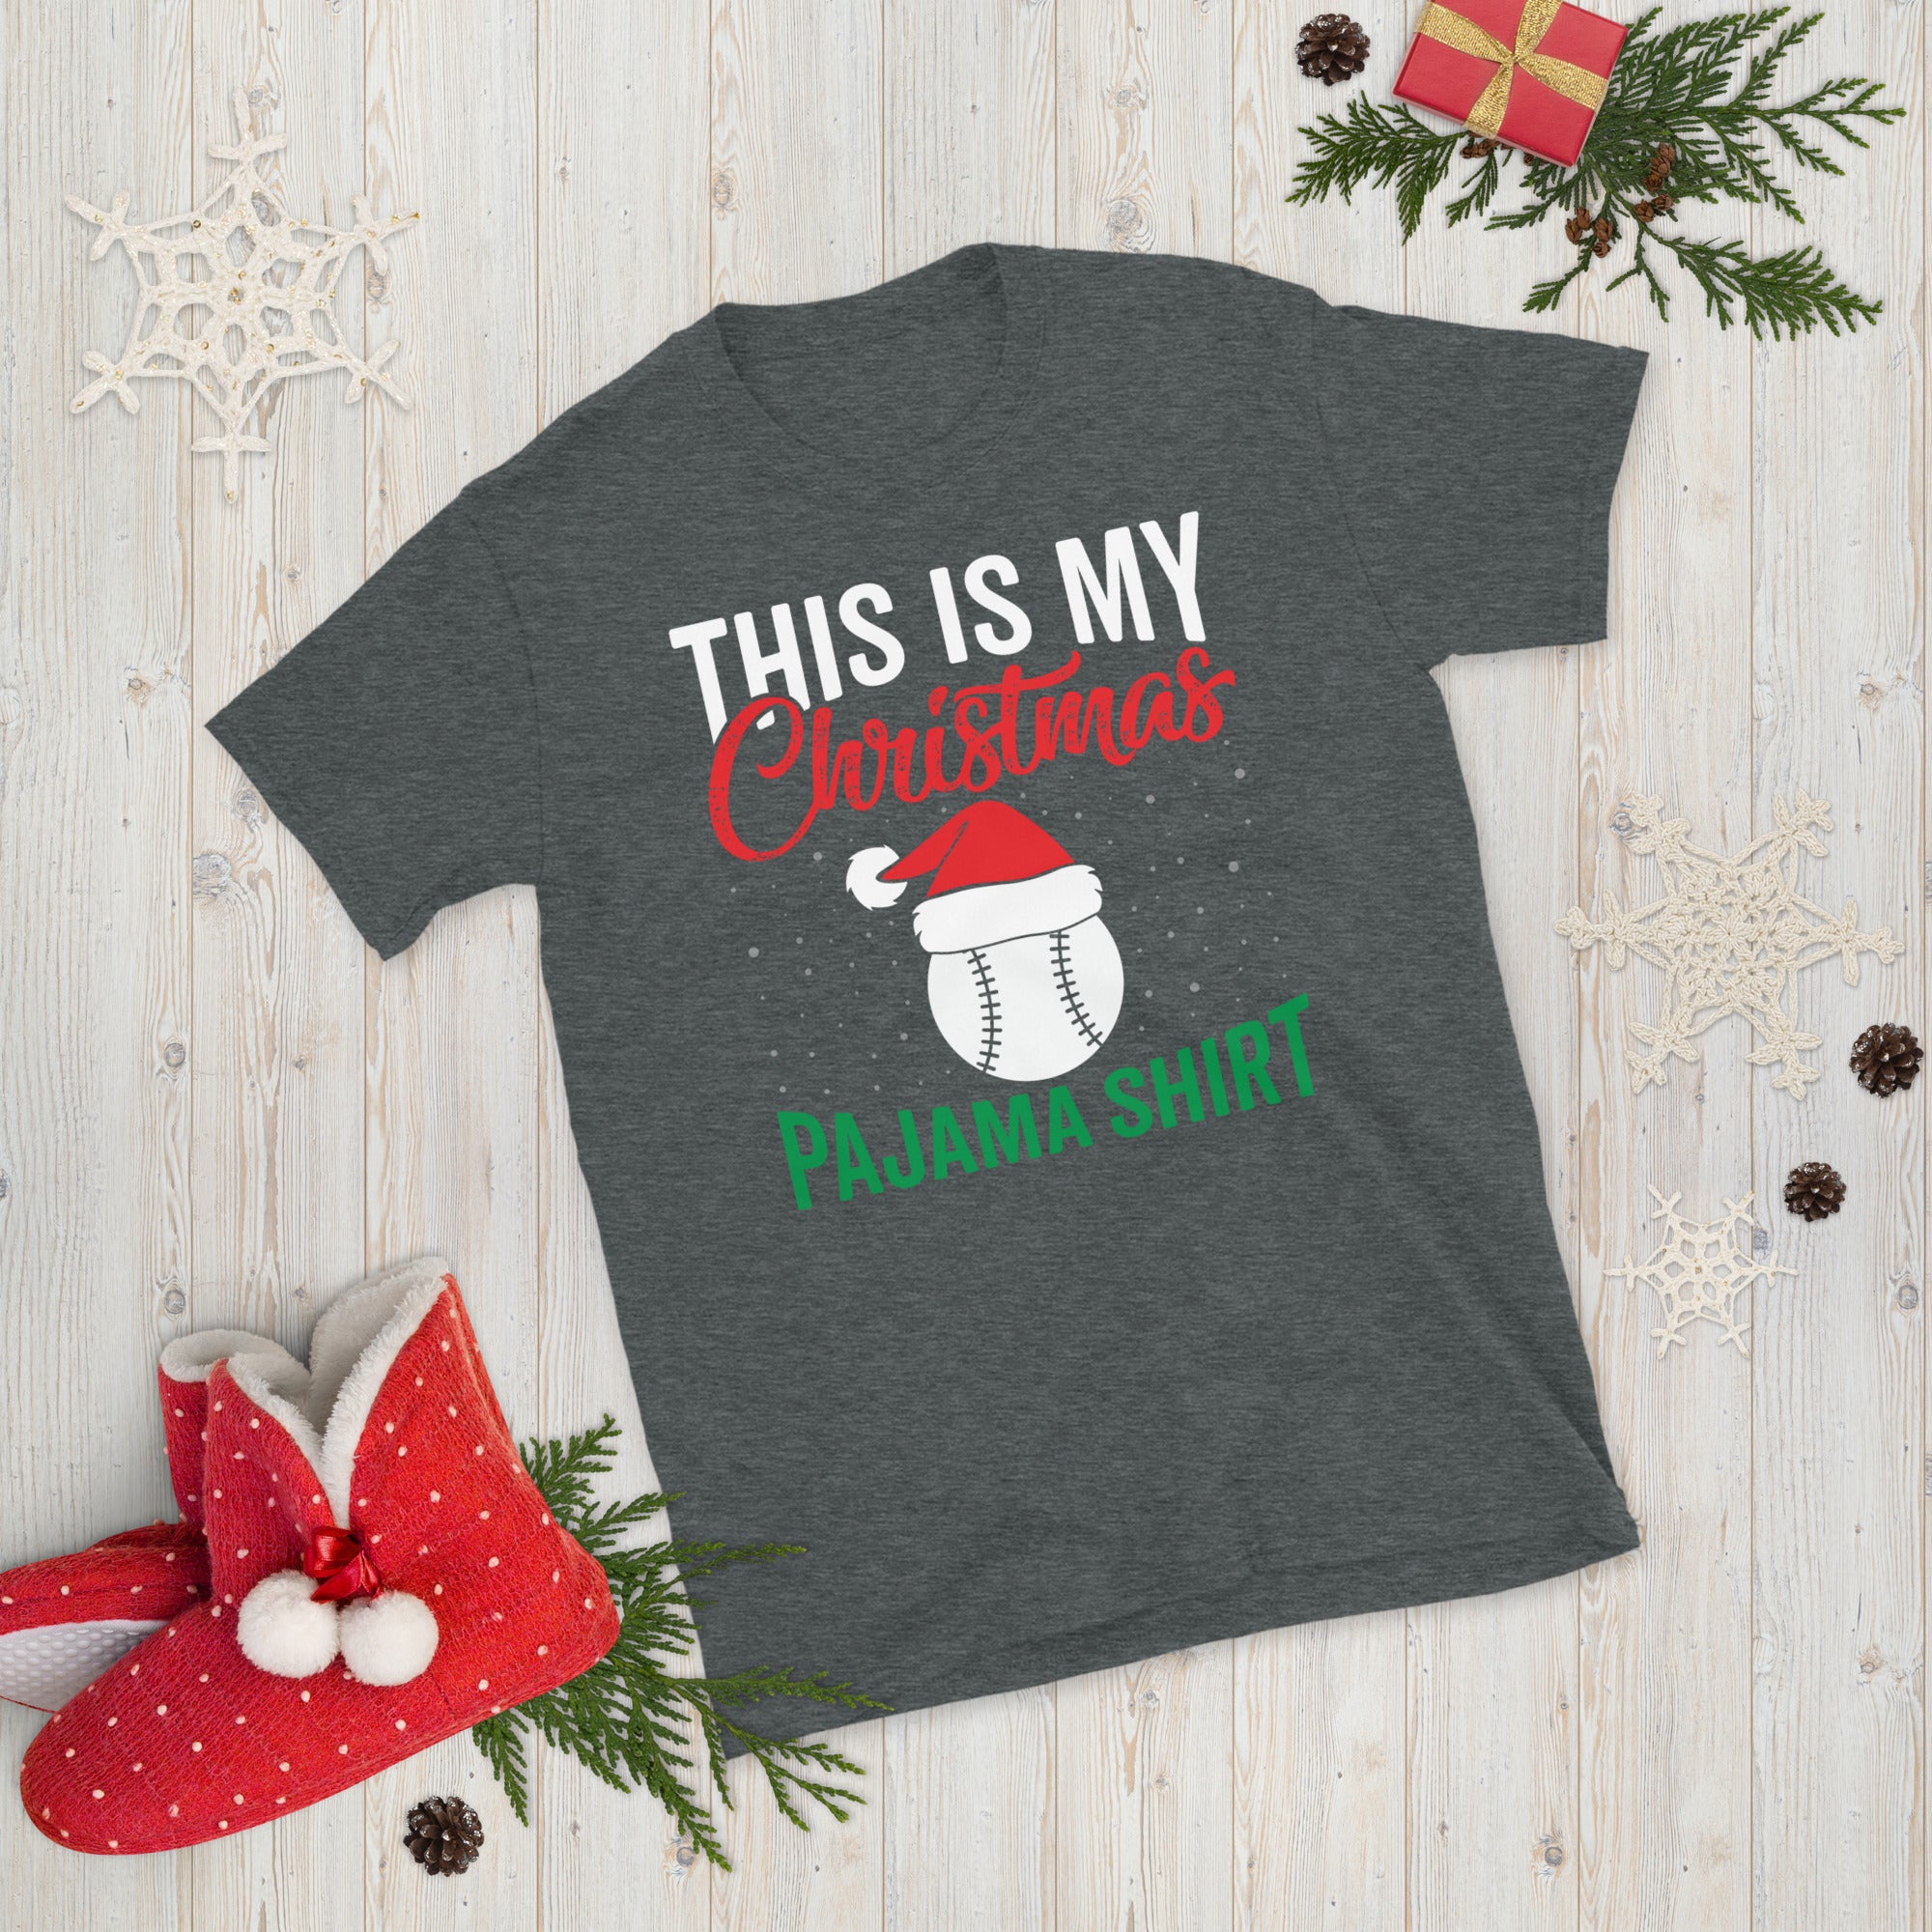 This Is My Christmas Pajama Shirt, Christmas Baseball Shirt, American Baseball T Shirt, Baseball Christmas Gift, Xmas Baseball Tee - Madeinsea©